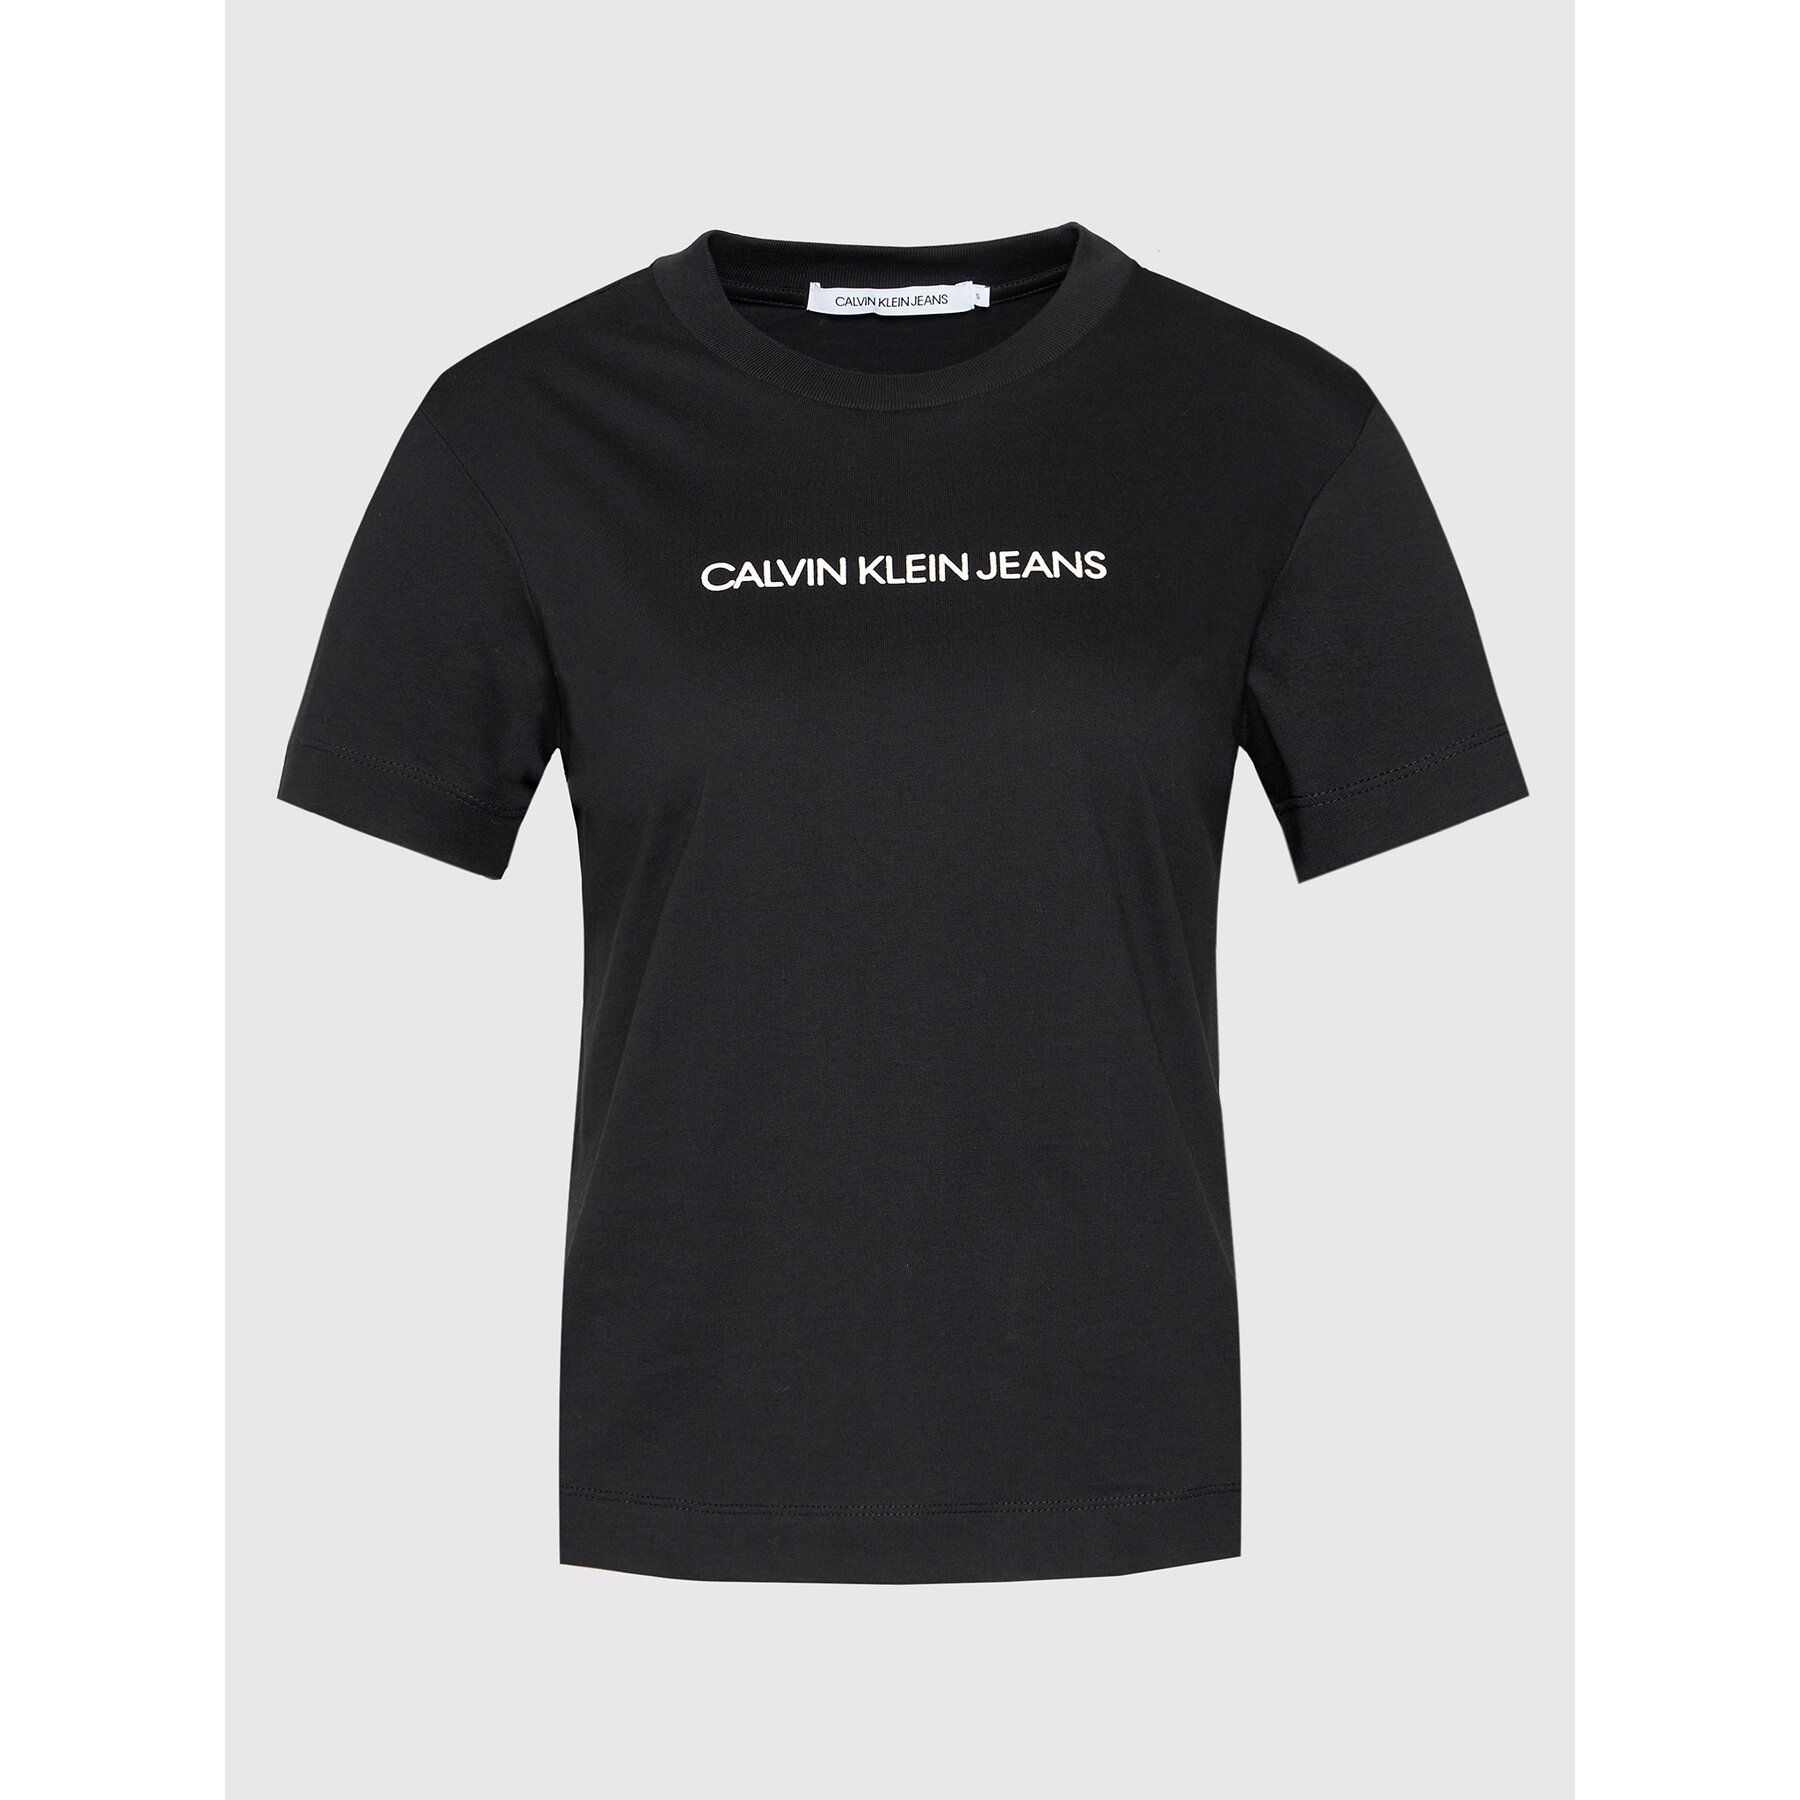 Dámske tričko s nápisom Calvin Klein - čierna